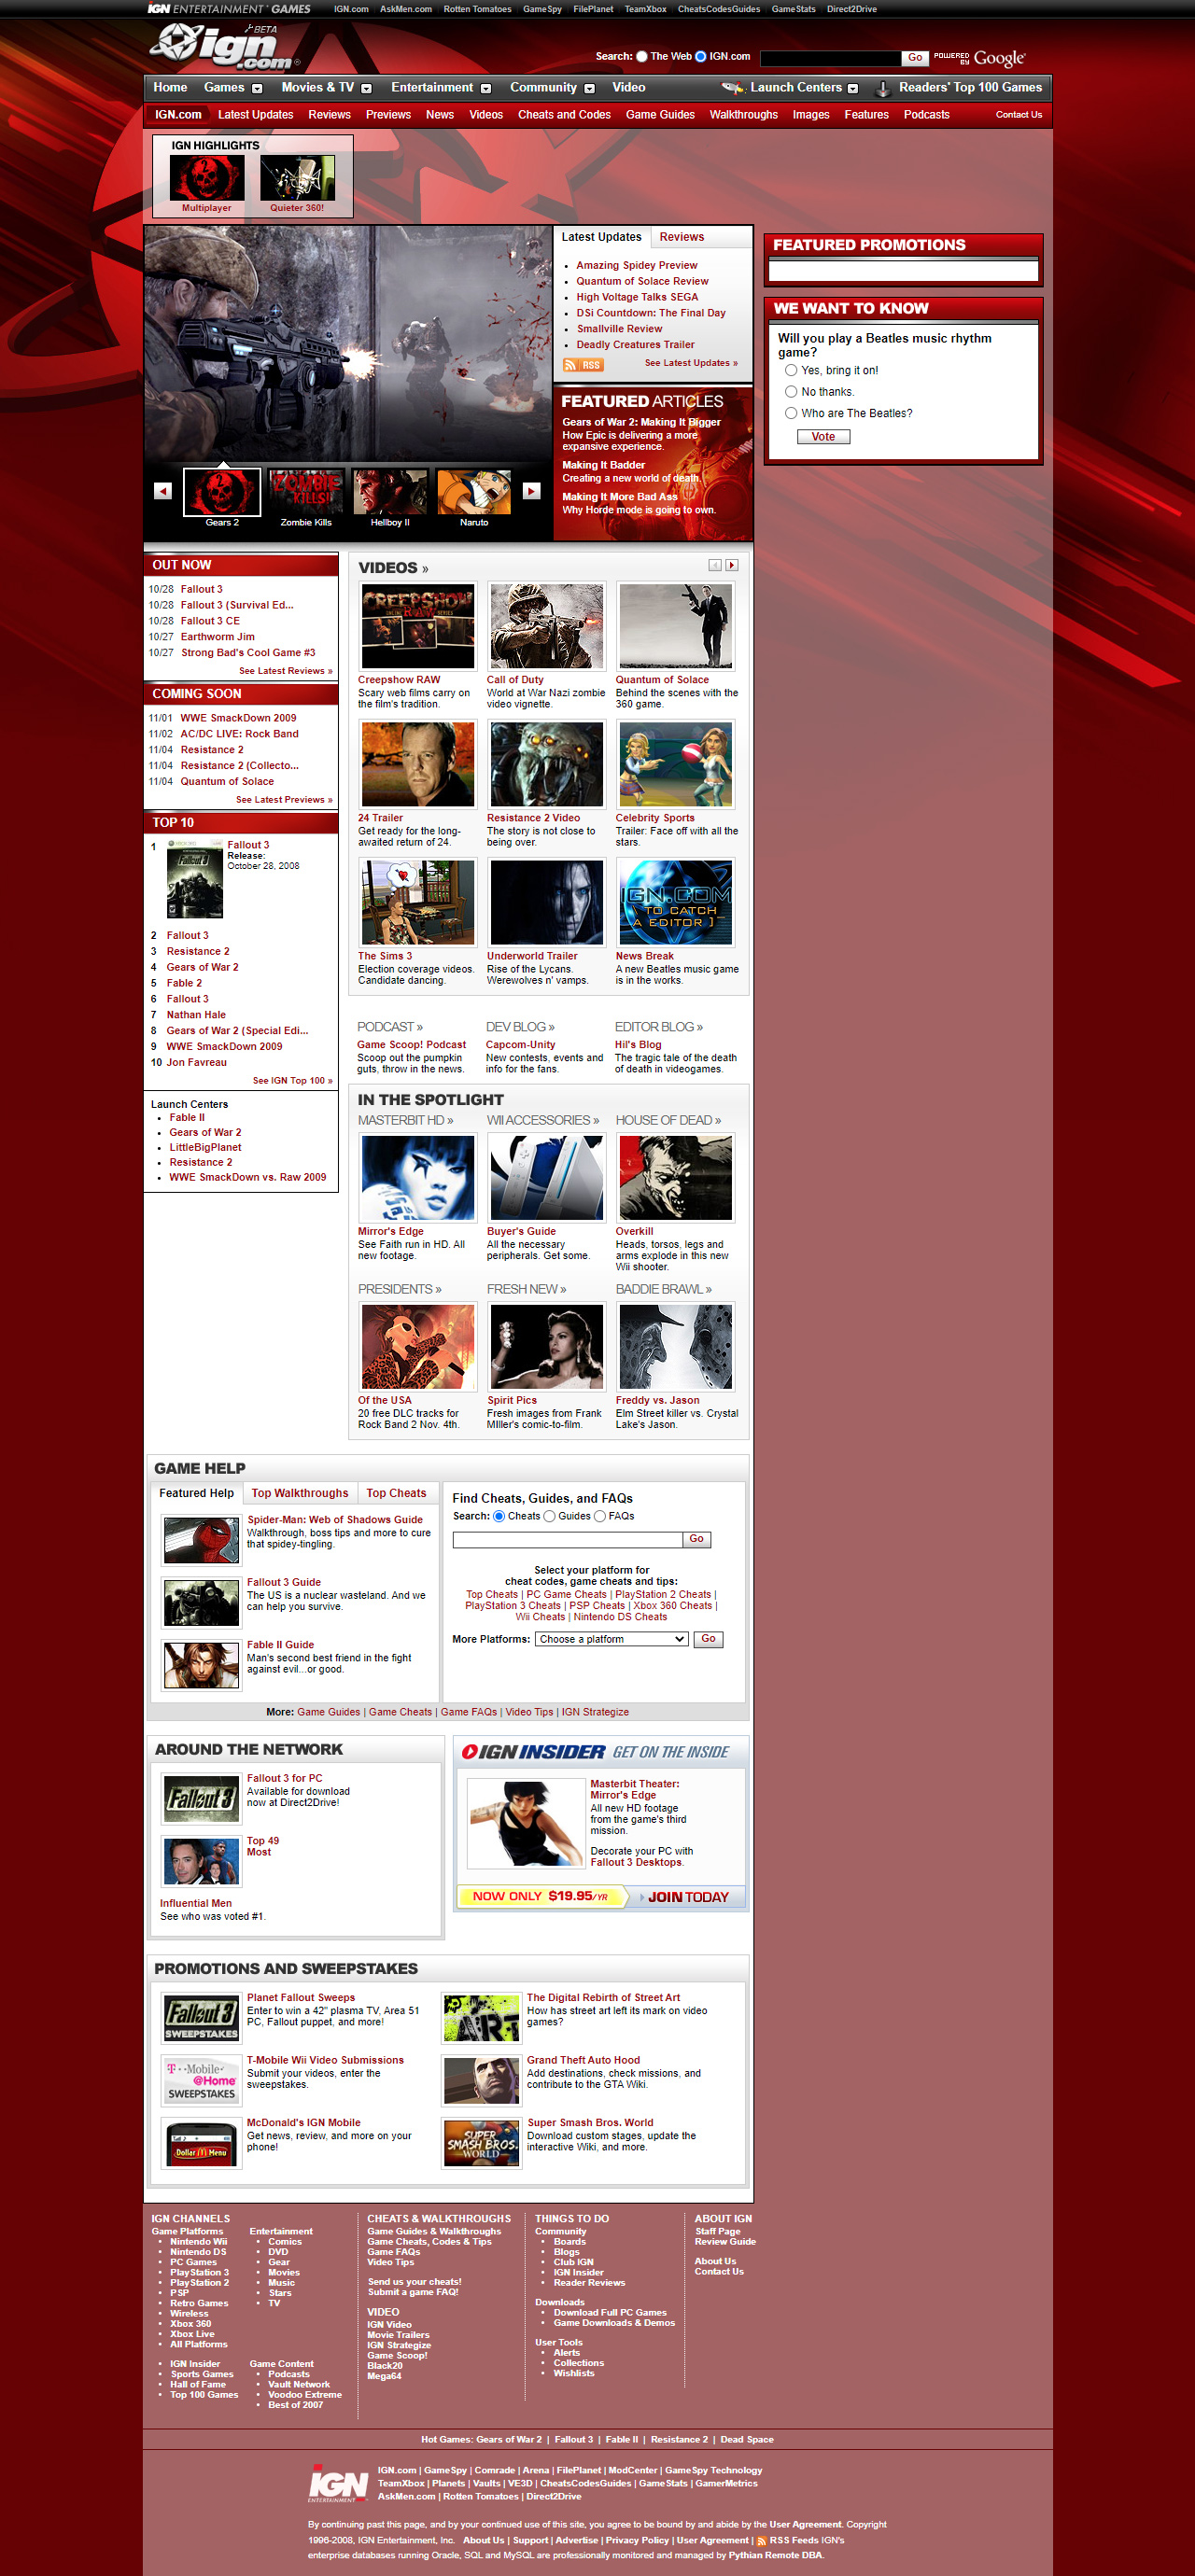 IGN website in 2008